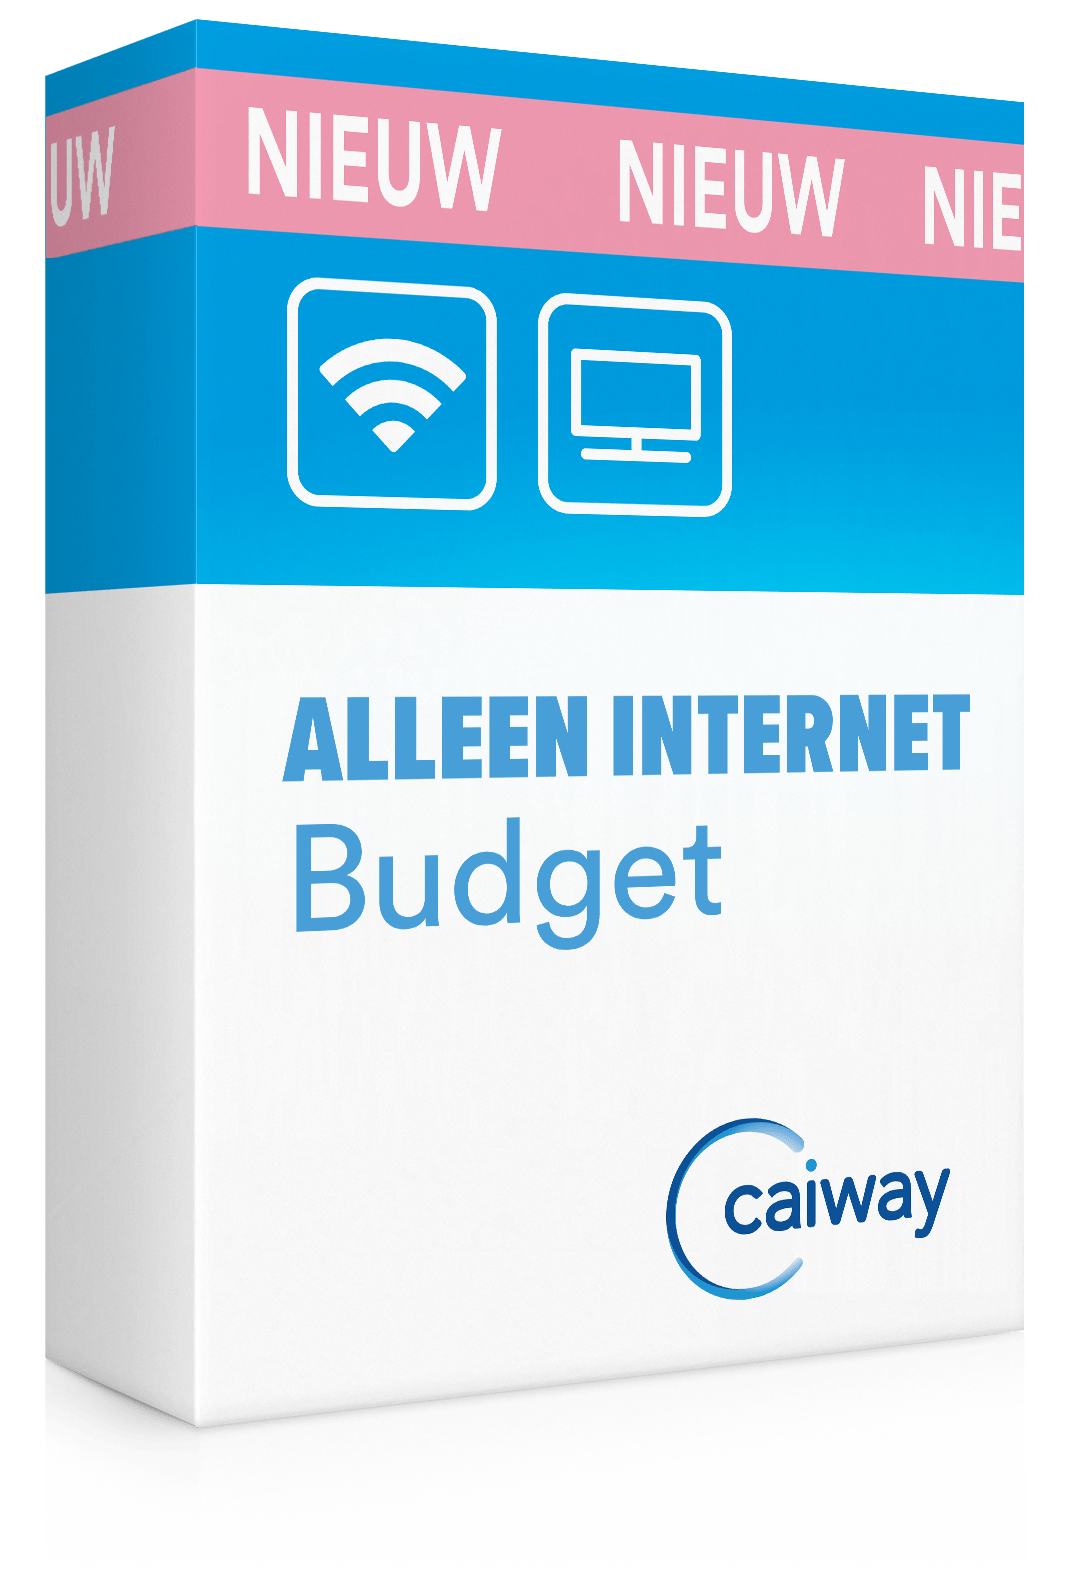 Ligatie Geslagen vrachtwagen Thespian Alleen internet thuis | Internet only | Caiway.nl